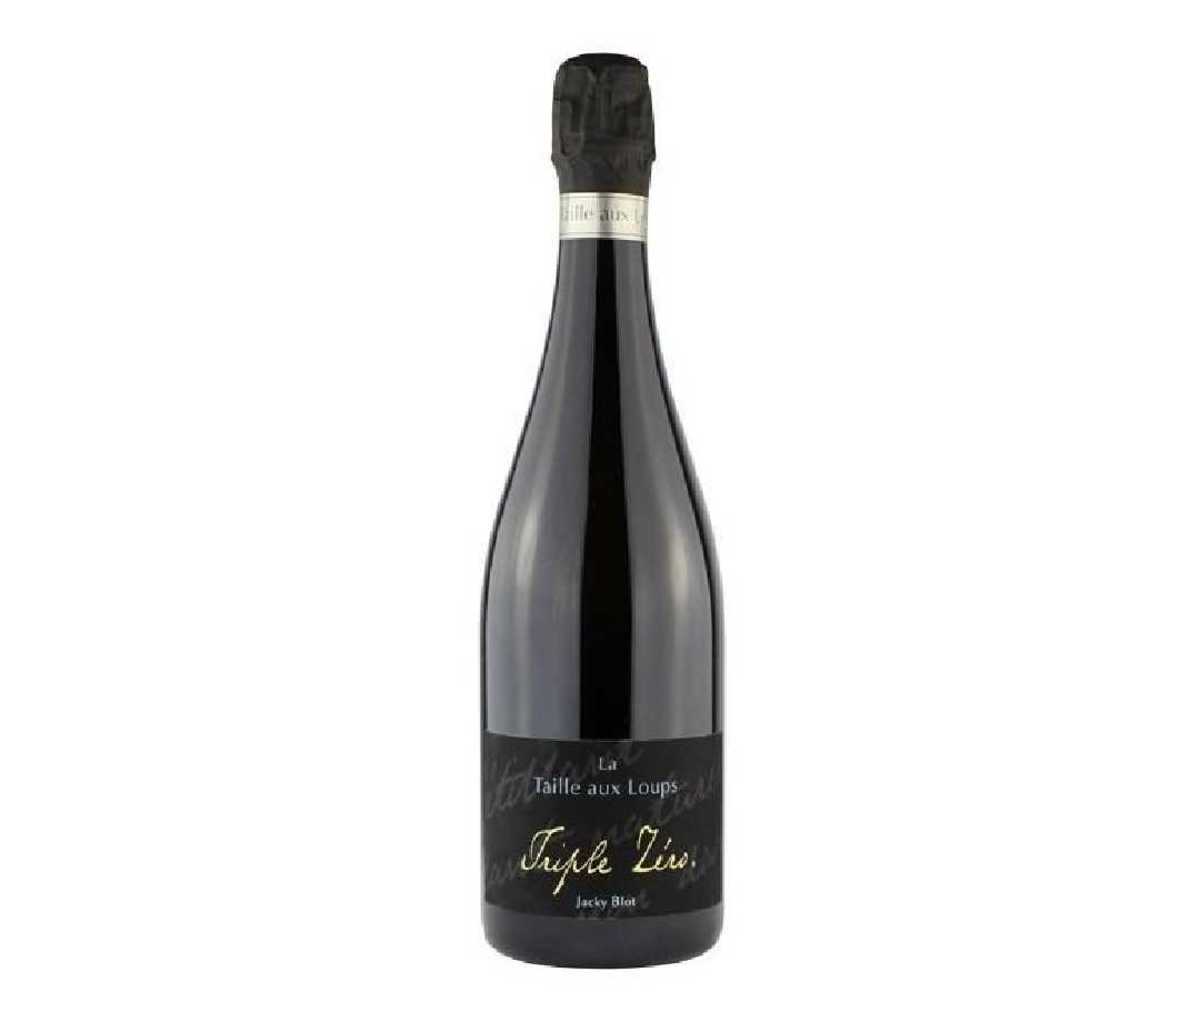 A bottle of Jacky Blot Domaine de la Taille Aux Loups "Triple Zero" Montlouis Pétillant Brut wine.